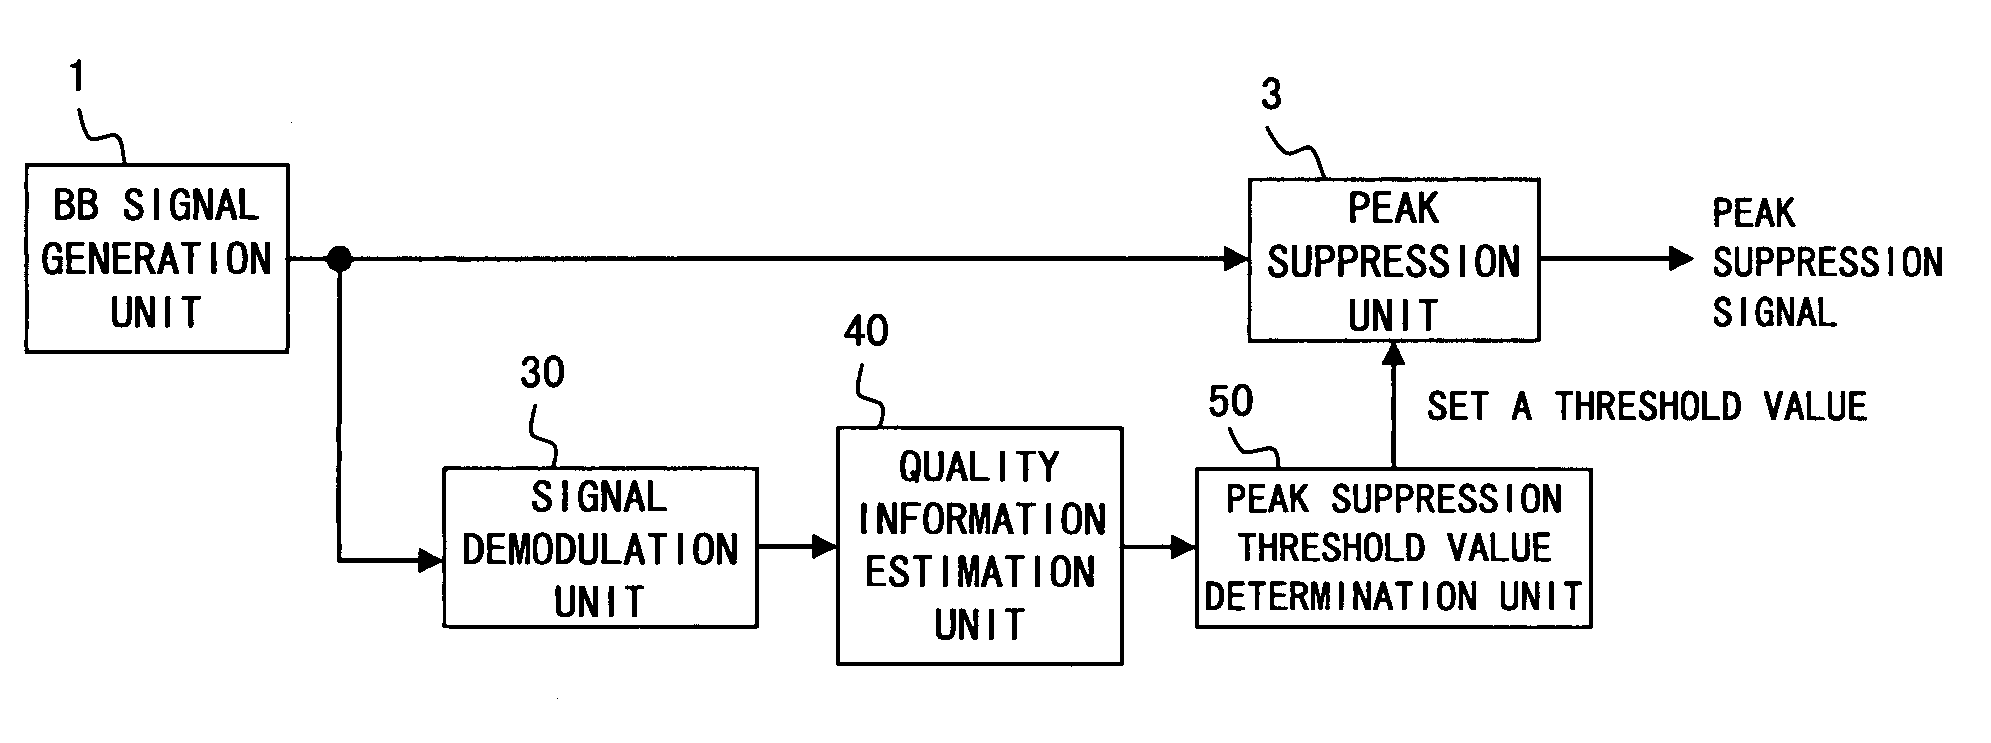 Peak suppression control apparatus